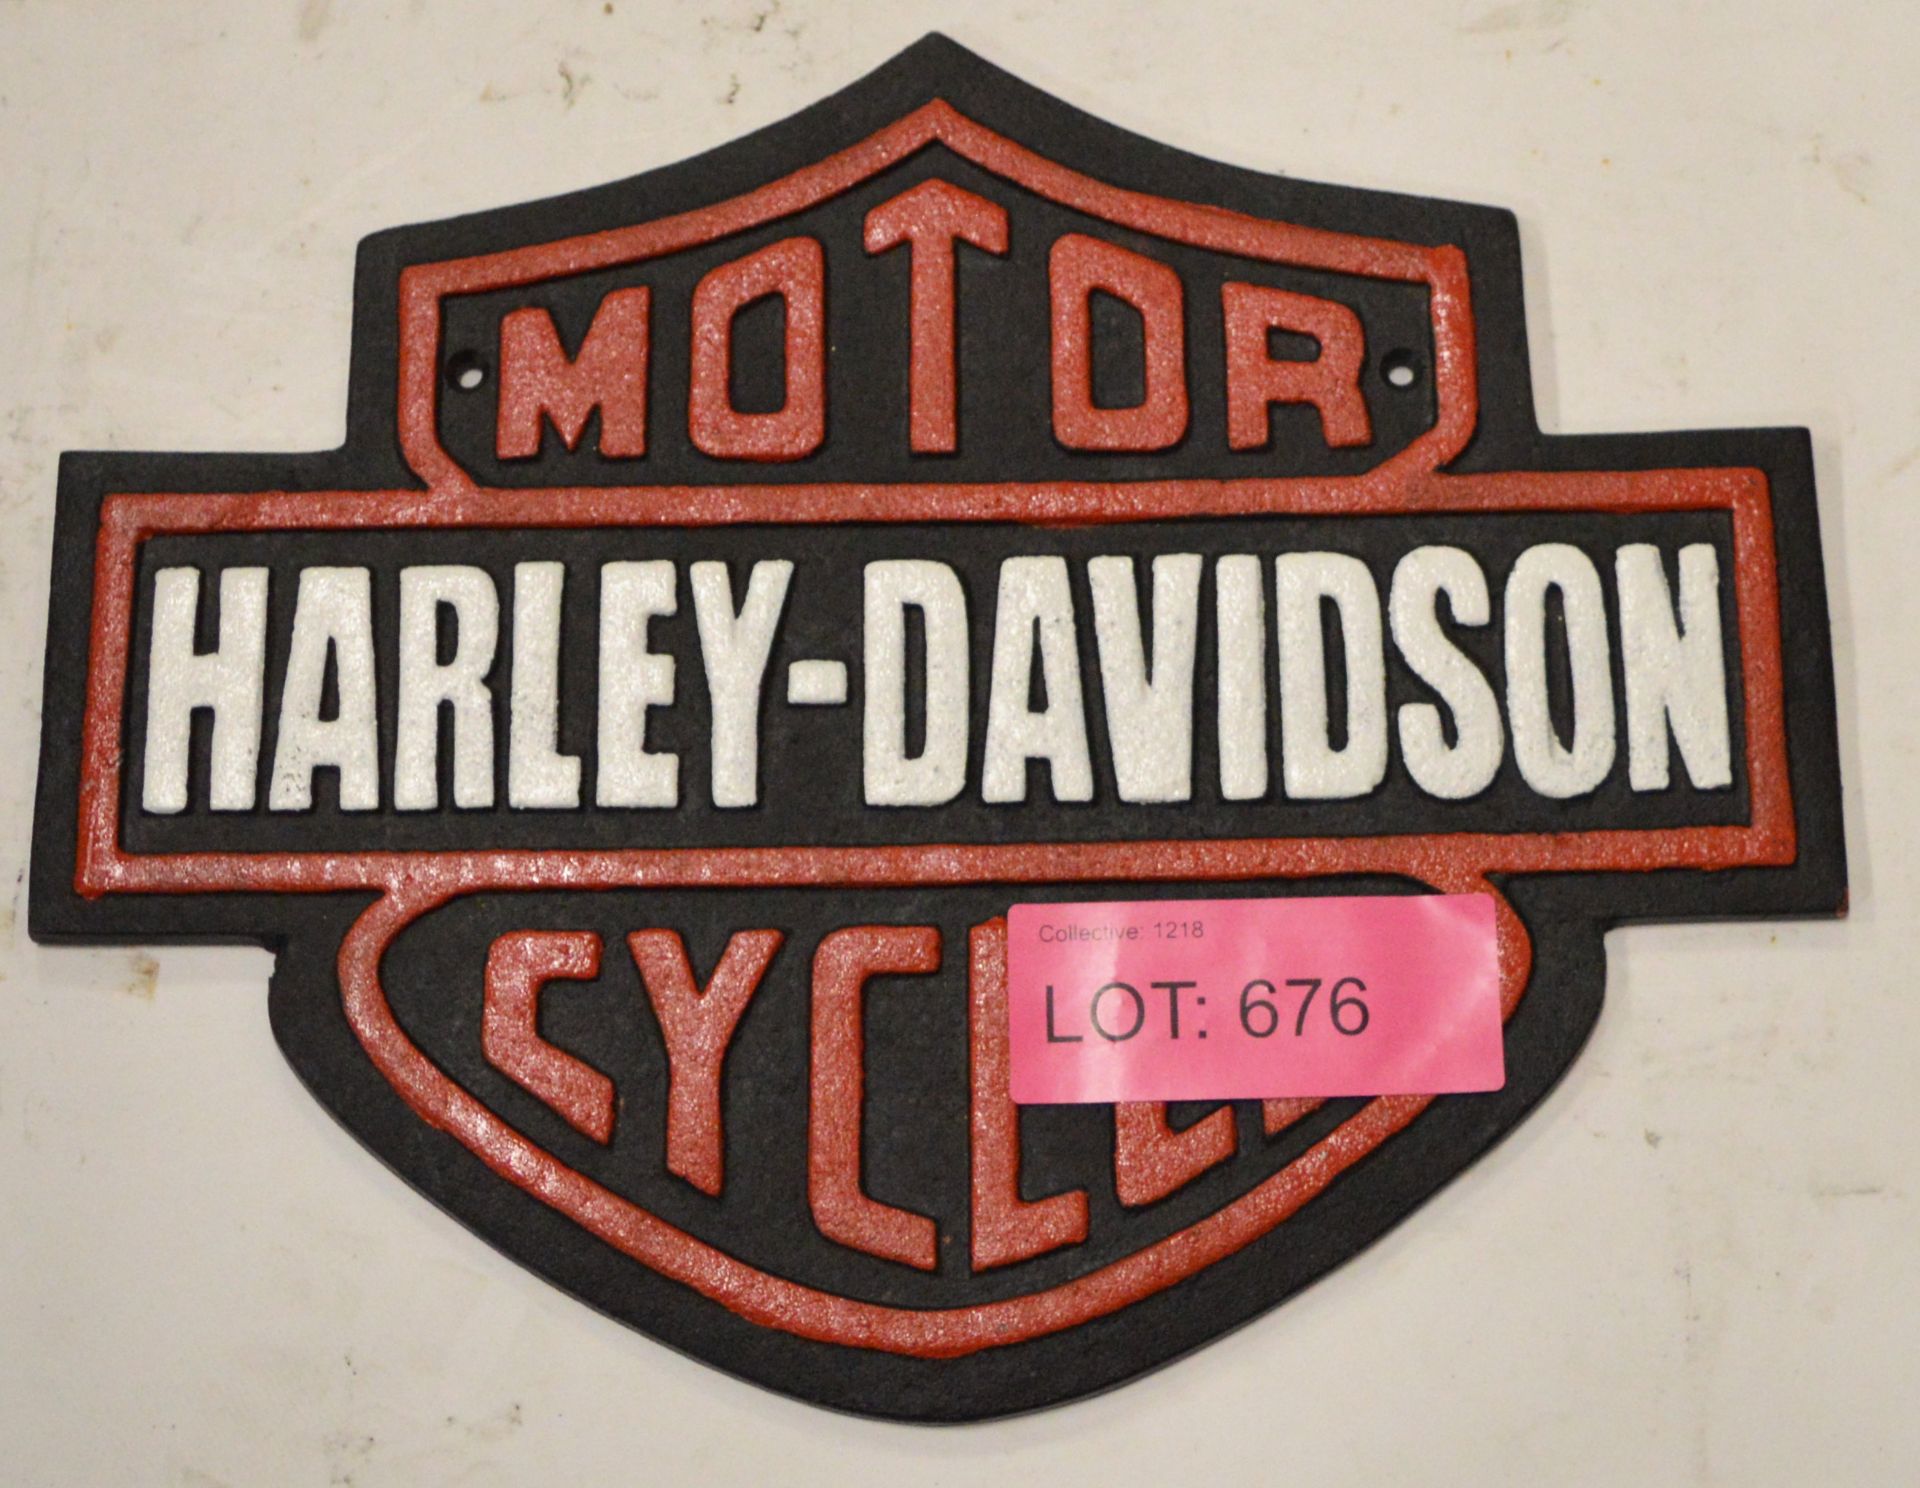 Cast Sign - Harley Davidson - 330mm wide.